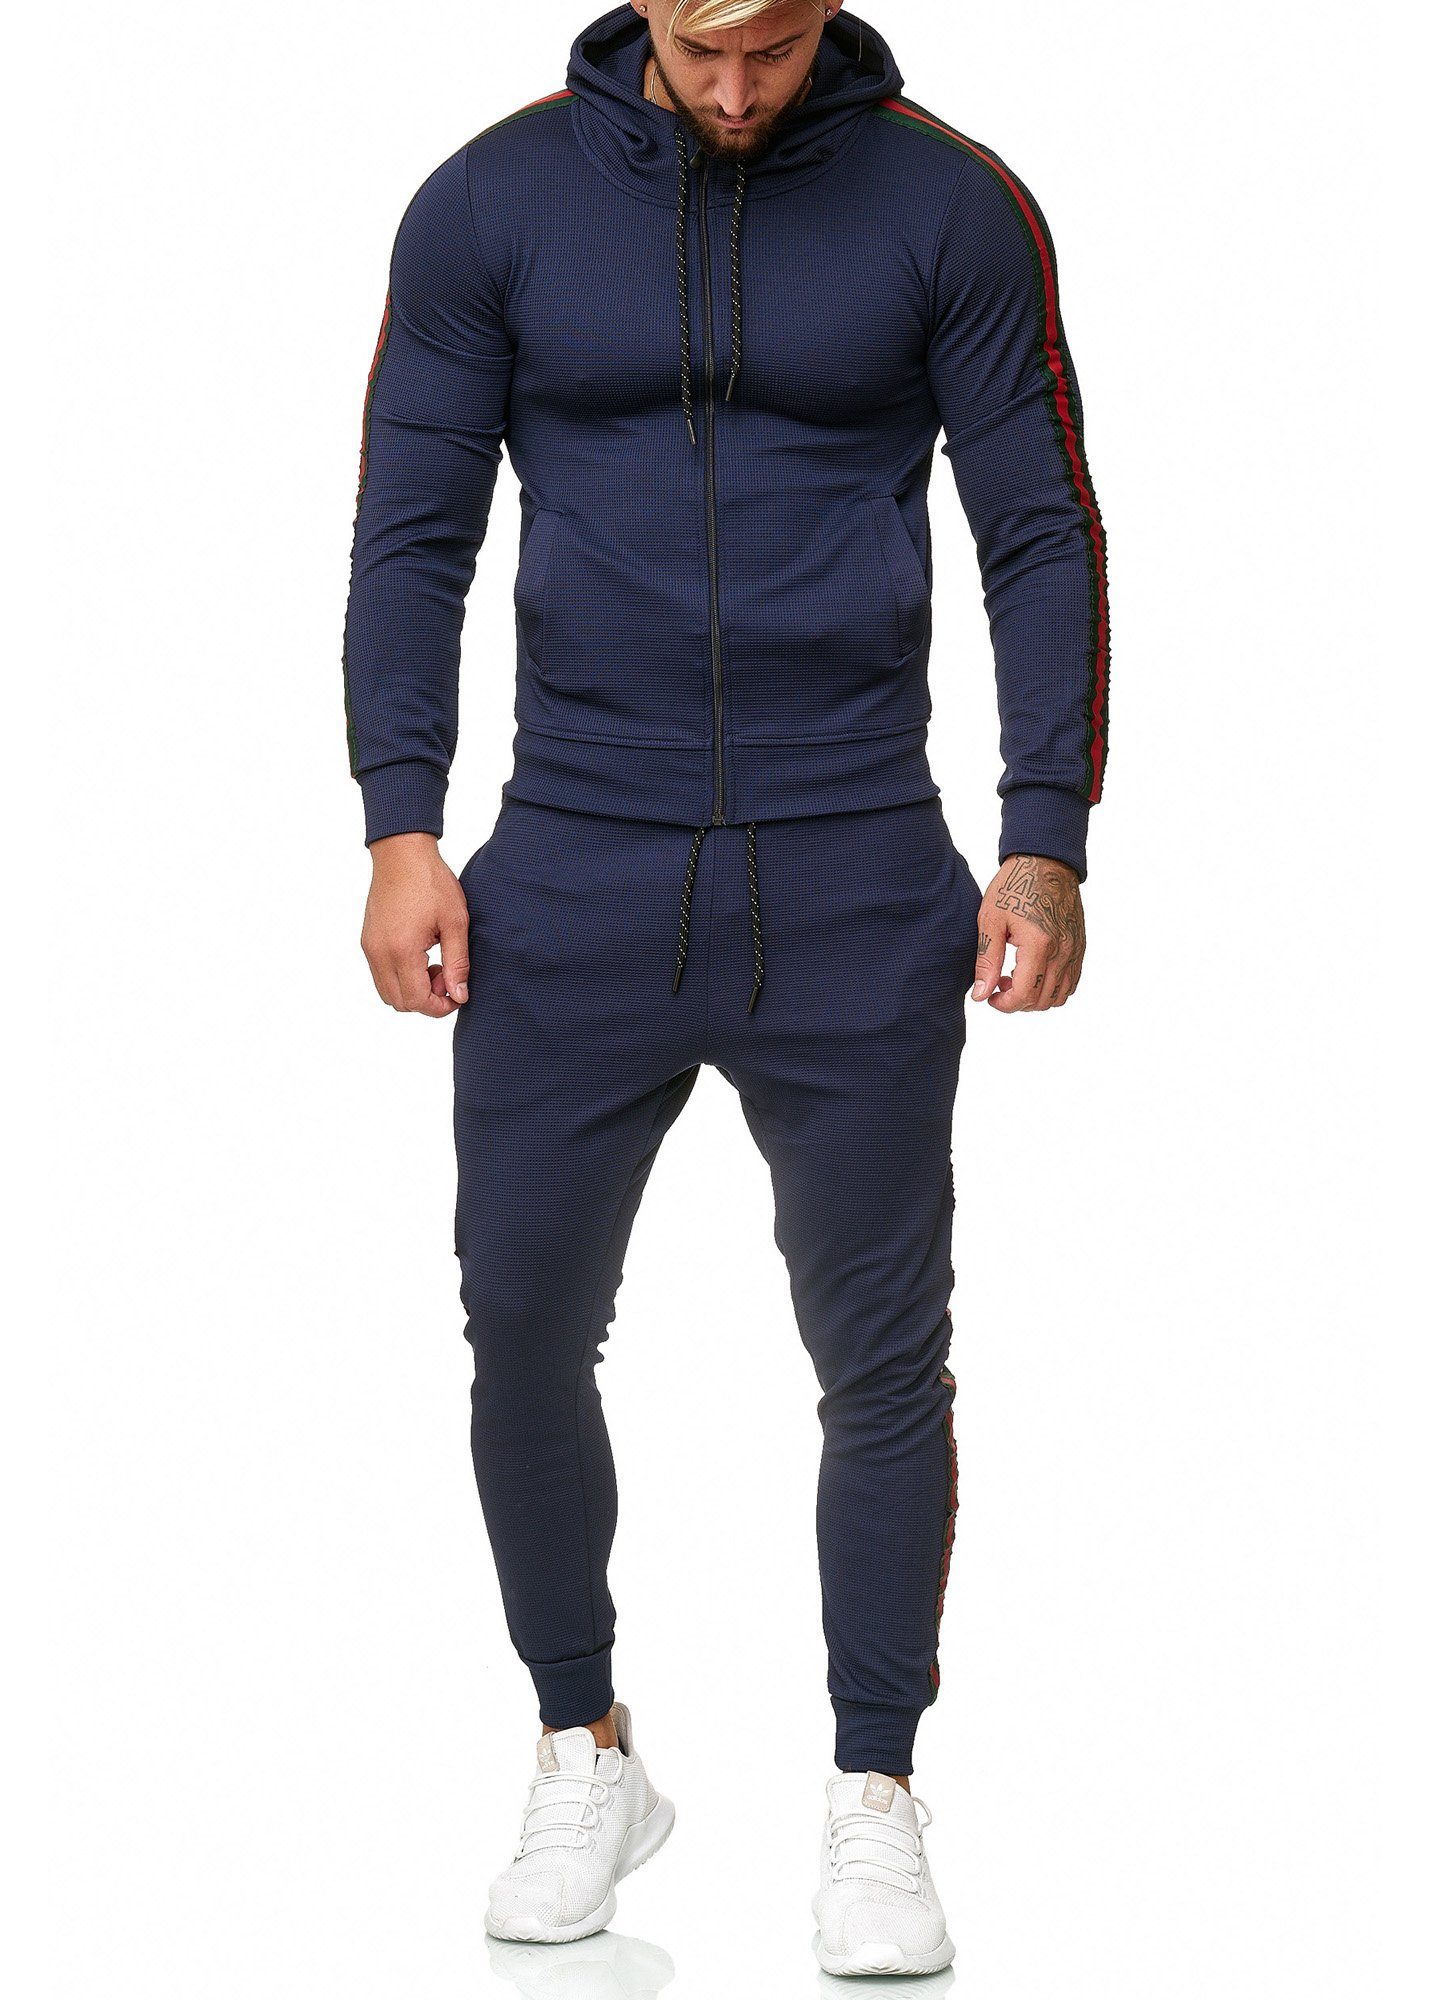 OTTO Herren Kleidung Nachtwäsche Jogginganzüge Trainingsanzug »Active Style Taped Tricot Trainingsanzug Herren« 